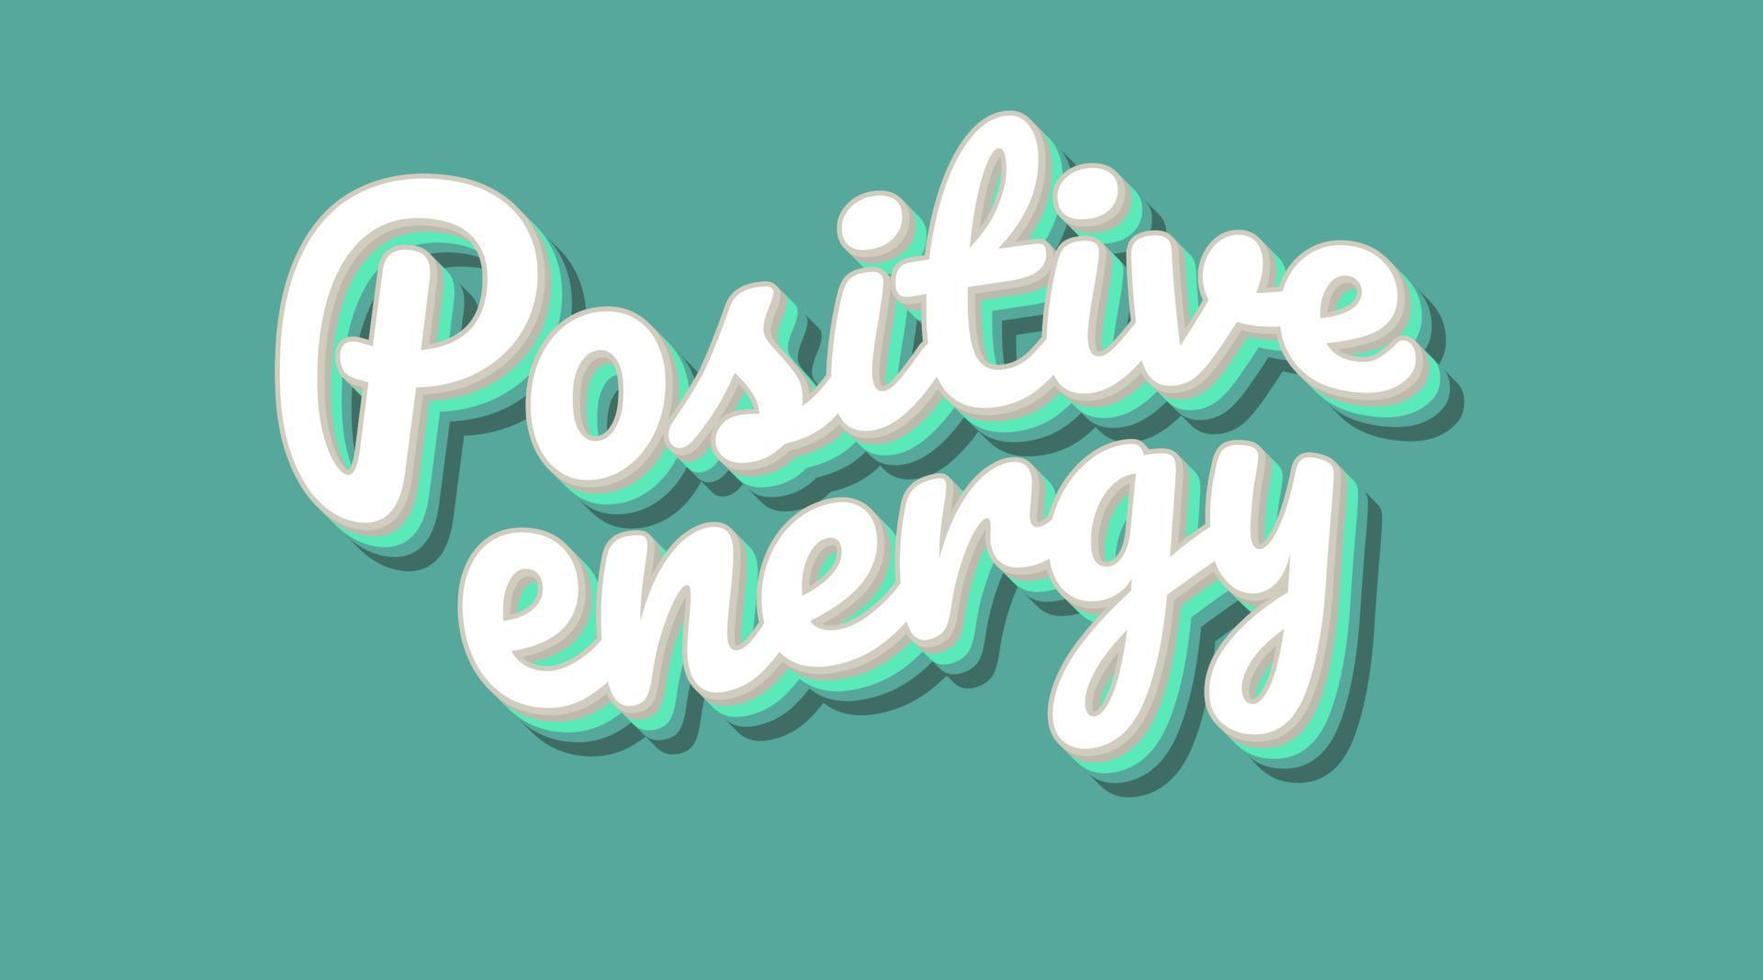 tipografía de letras con eslogan de texto de energía positiva vector